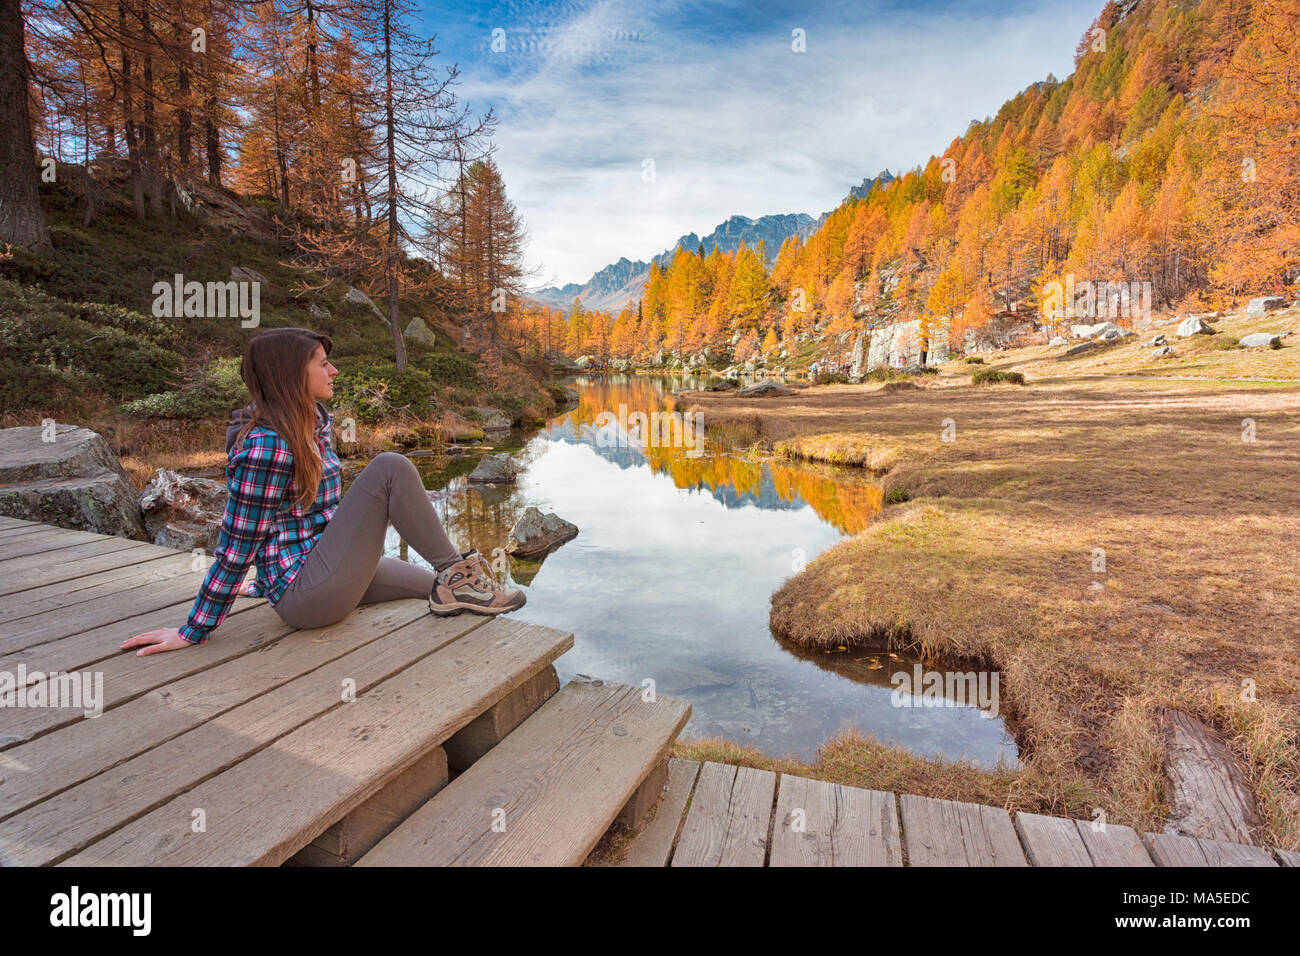 Eine Frau am kleinen See in der Nähe von als Hexen Crampiolo See, Alpe Veglia und Alpe Devero Naturpark, Baceno, Provinz Verbano Cusio Ossola, Piemont, Italien bekannt starren Stockfoto